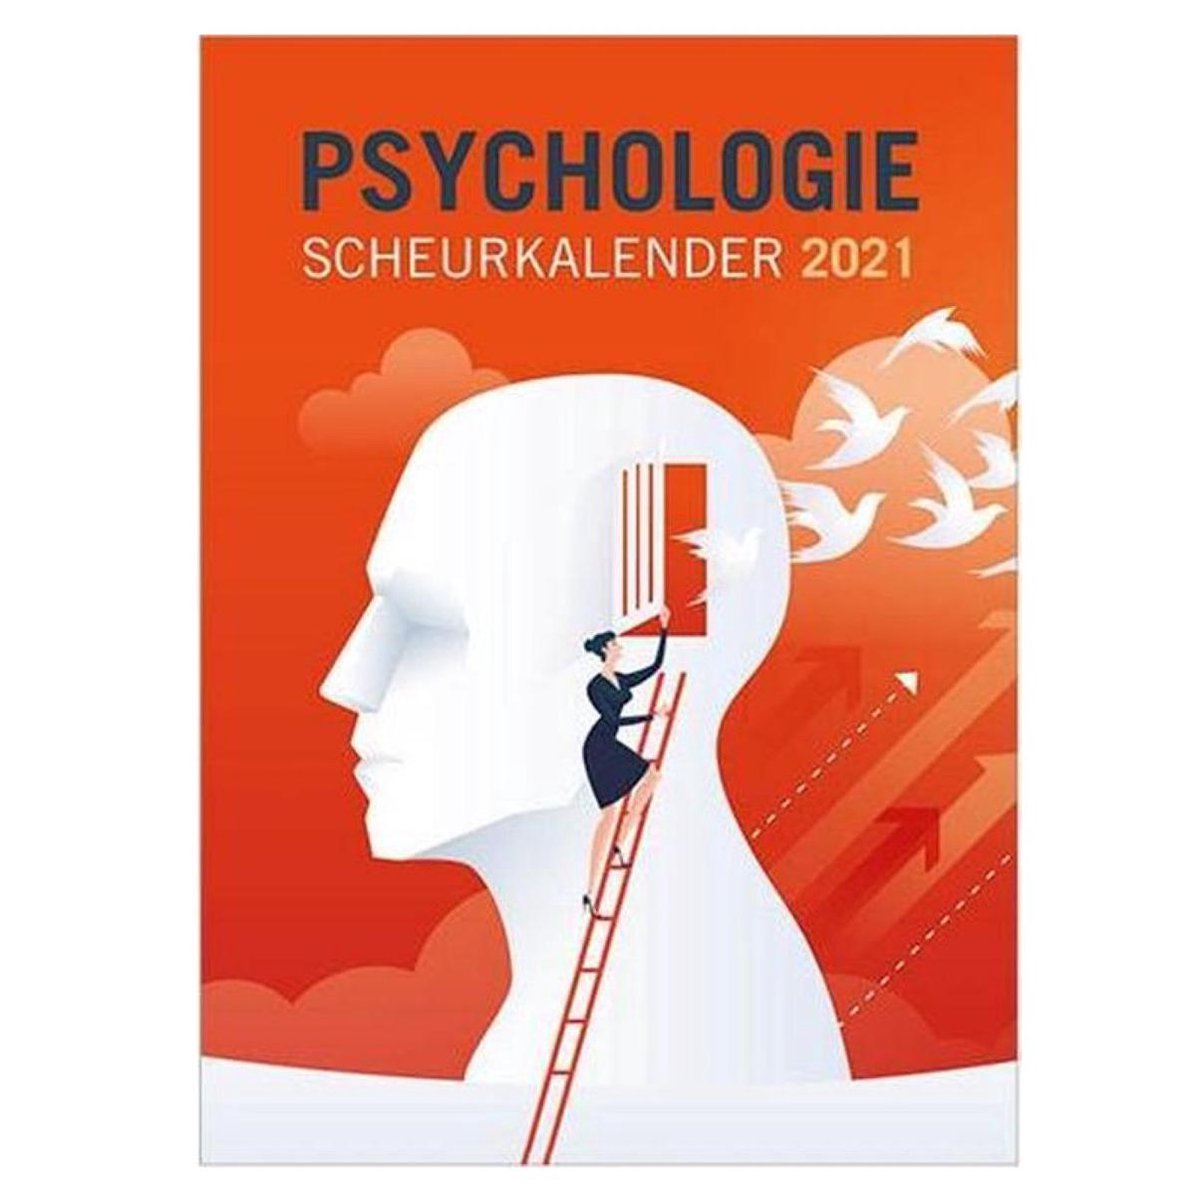 Psychologie scheurkalender 2021 - Kalenderwinkel.nl